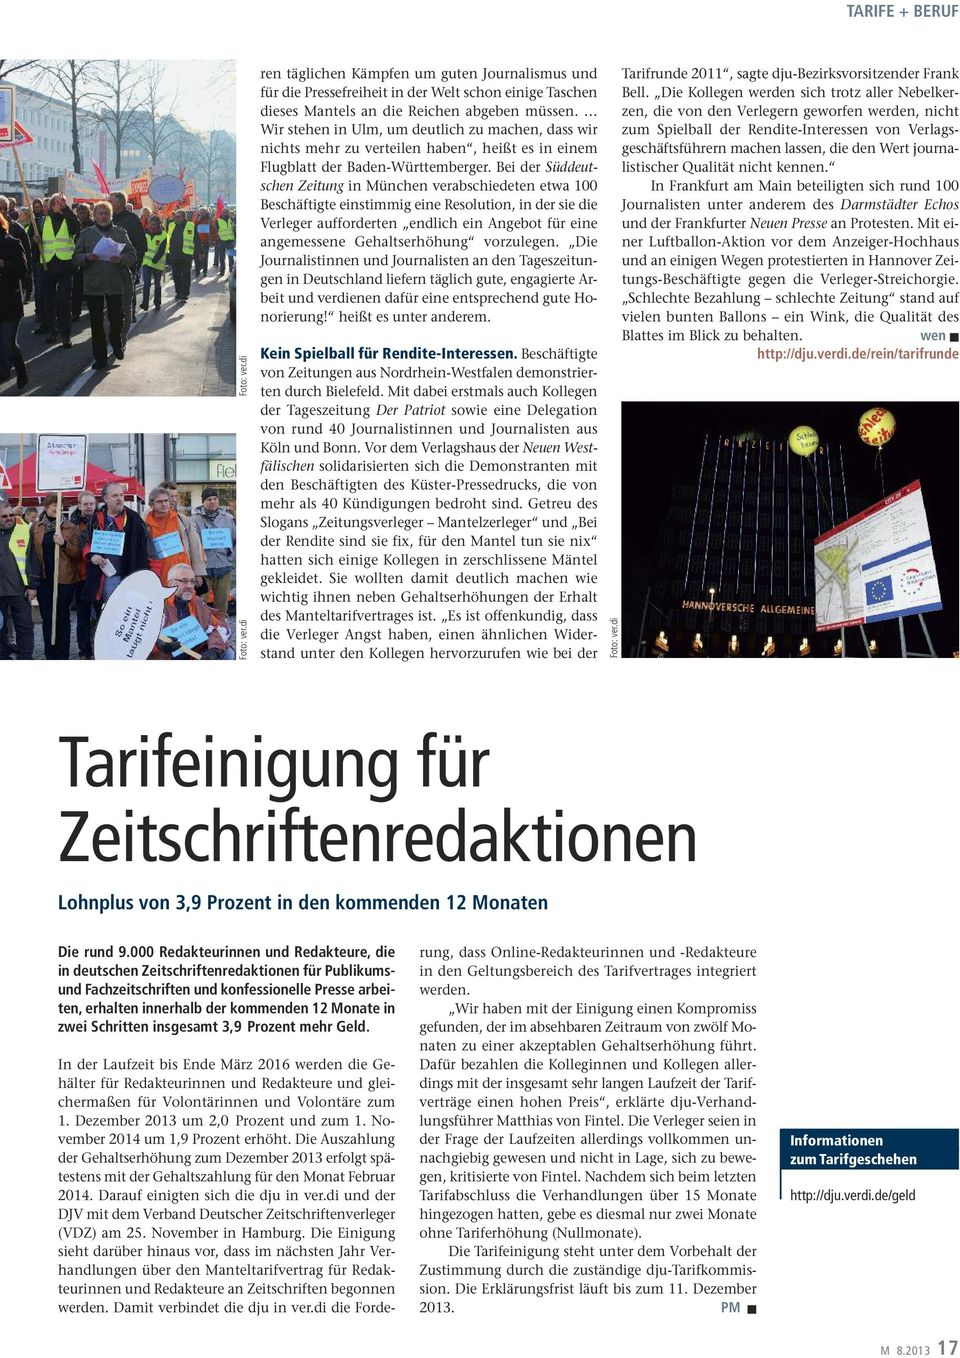 Bei der Süddeutschen Zeitung in München verabschiedeten etwa 100 Beschäftigte einstimmig eine Resolution, in der sie die Verleger aufforderten endlich ein Angebot für eine angemessene Gehaltserhöhung